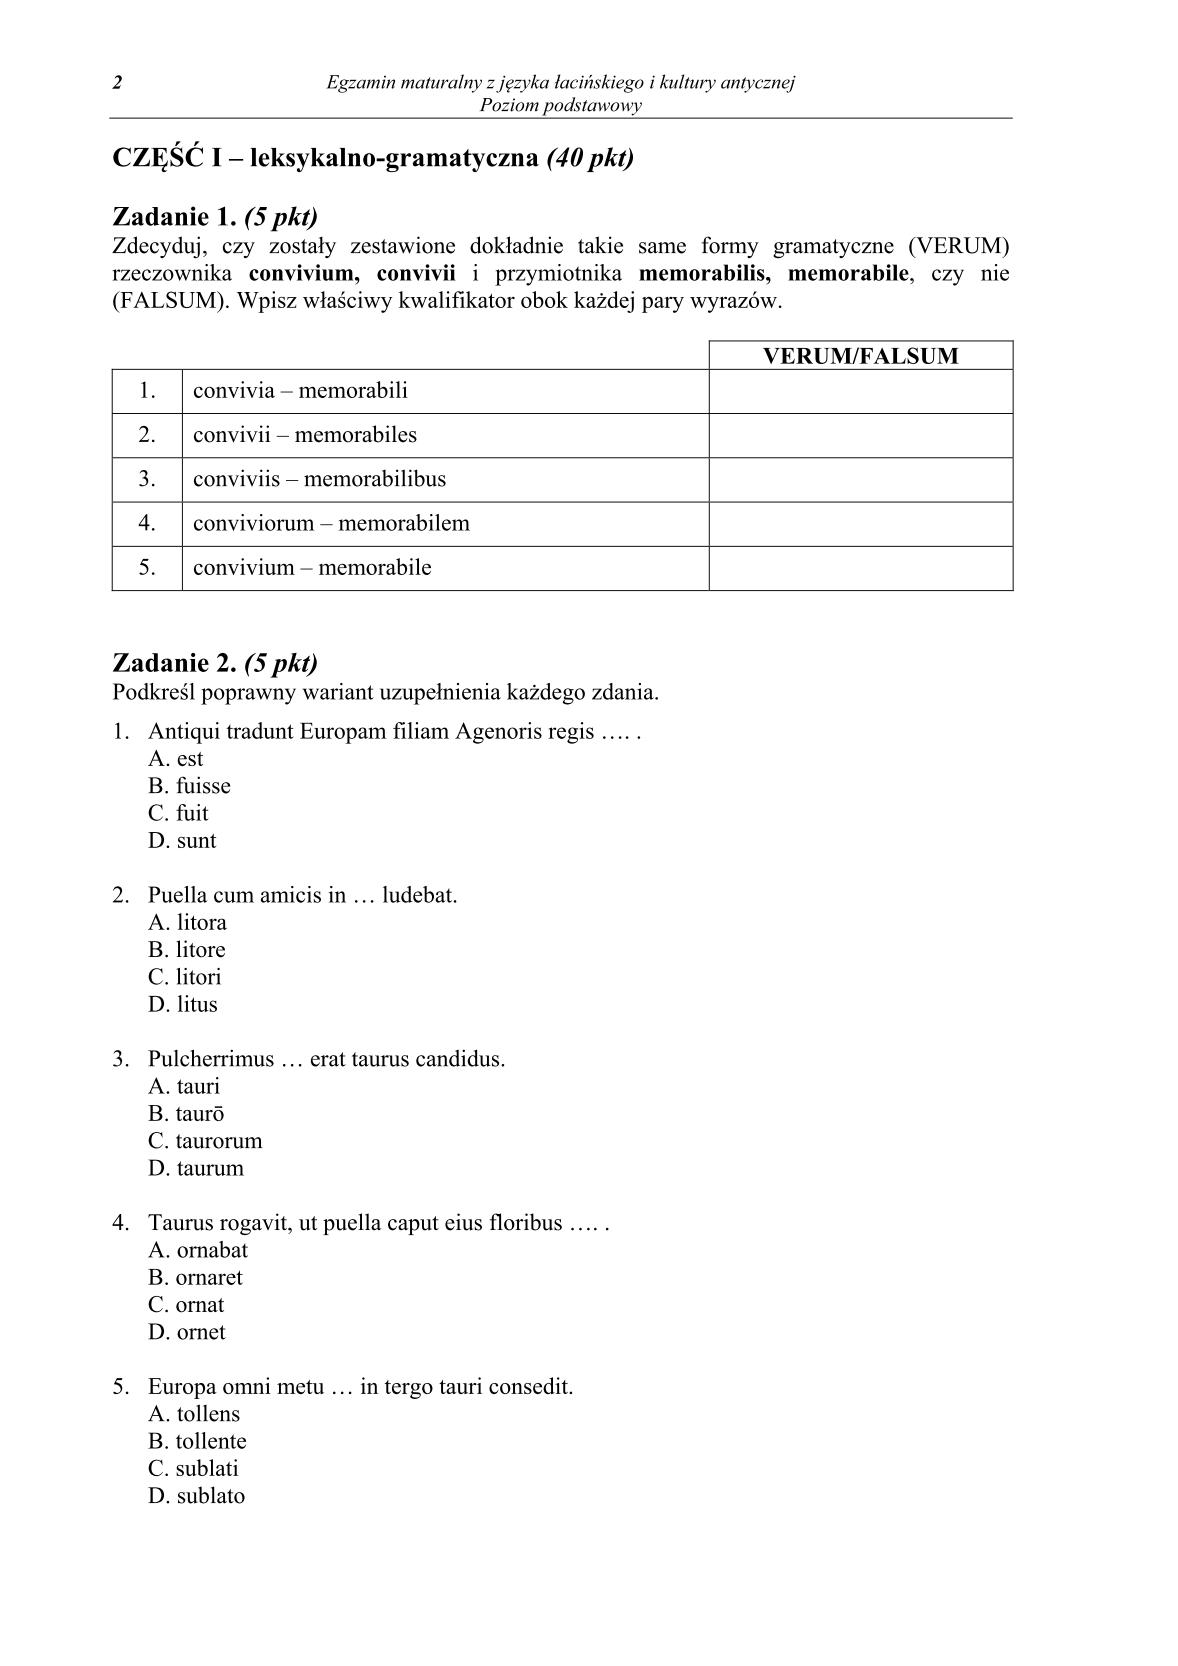 pytania-jezyk-lacinski-i-kultura-antyczna-poziom-podstawowy-matura-2014-str.2